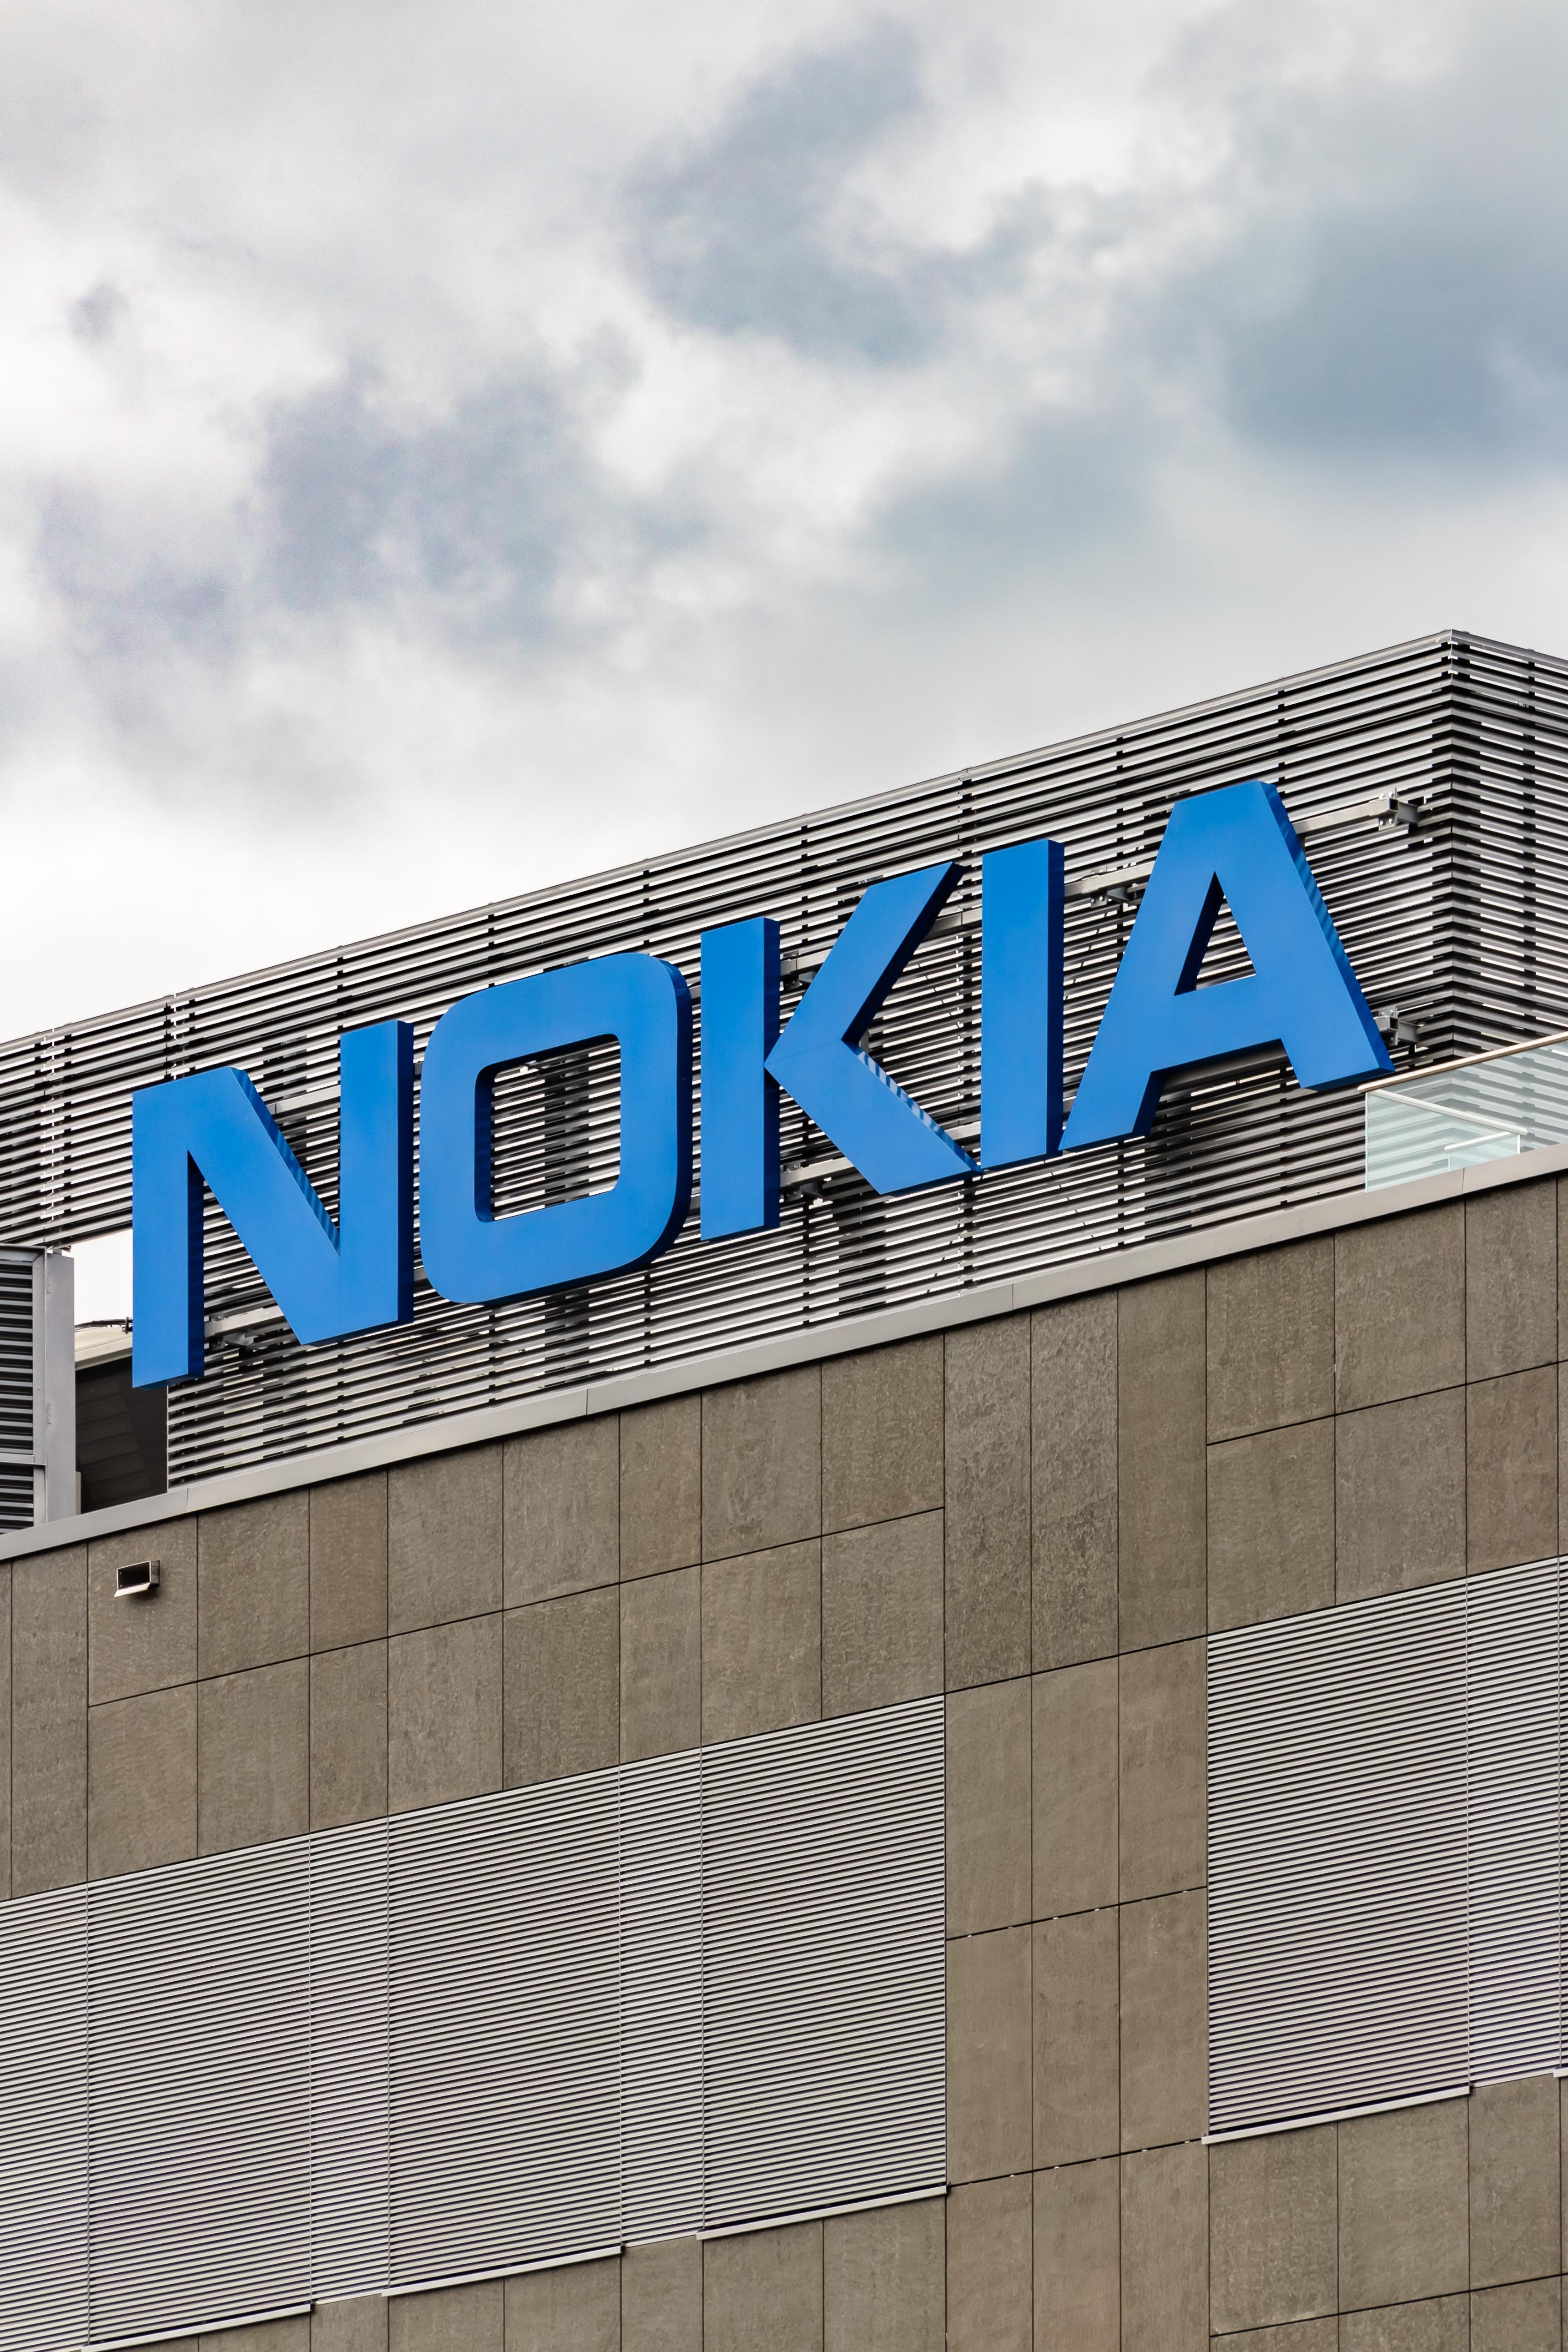 El Gobierno ruso podría estar utilizando equipamiento de Nokia en su sistema de espionaje